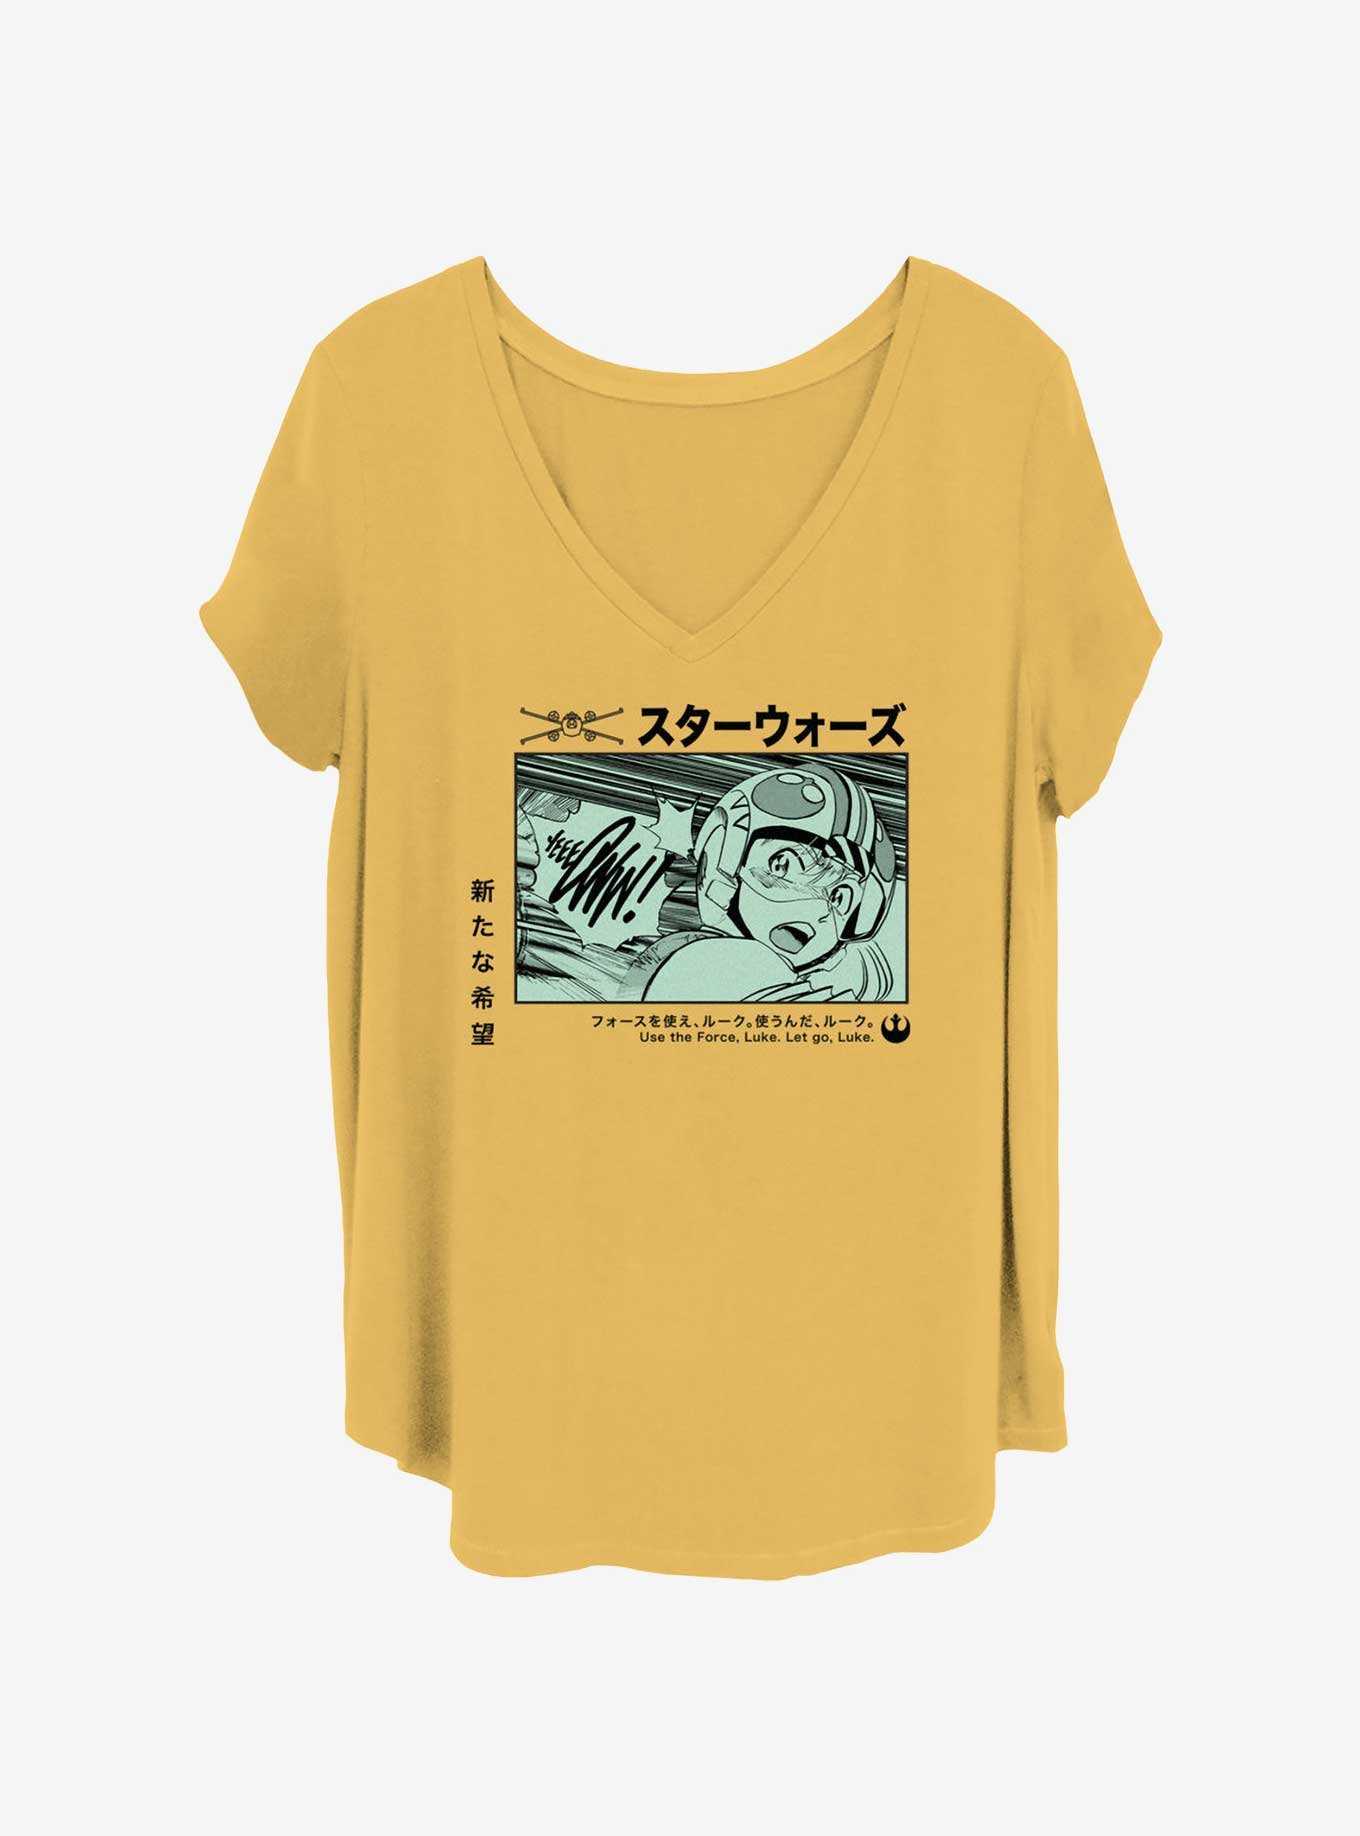 Star Wars Anime Luke Panel Girls T-Shirt Plus Size, , hi-res